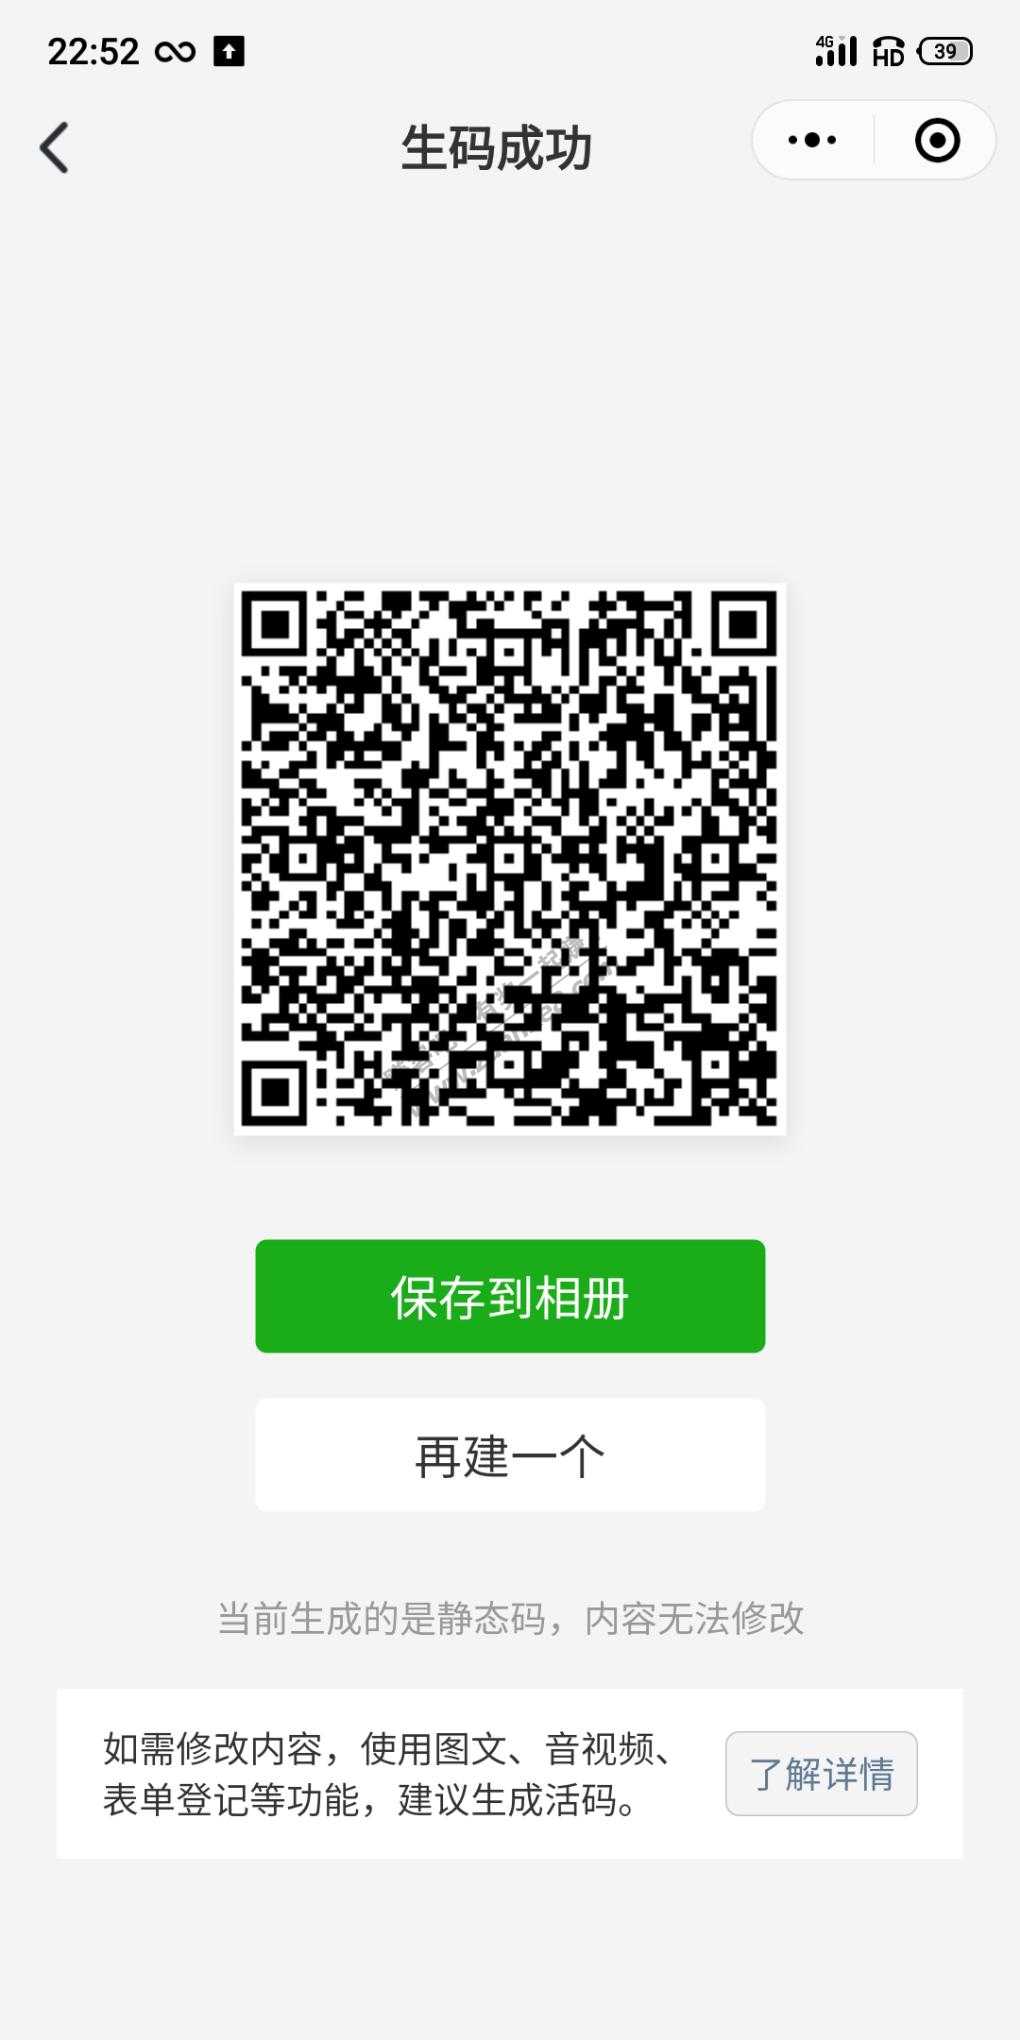 广西建行15话费-惠小助(52huixz.com)